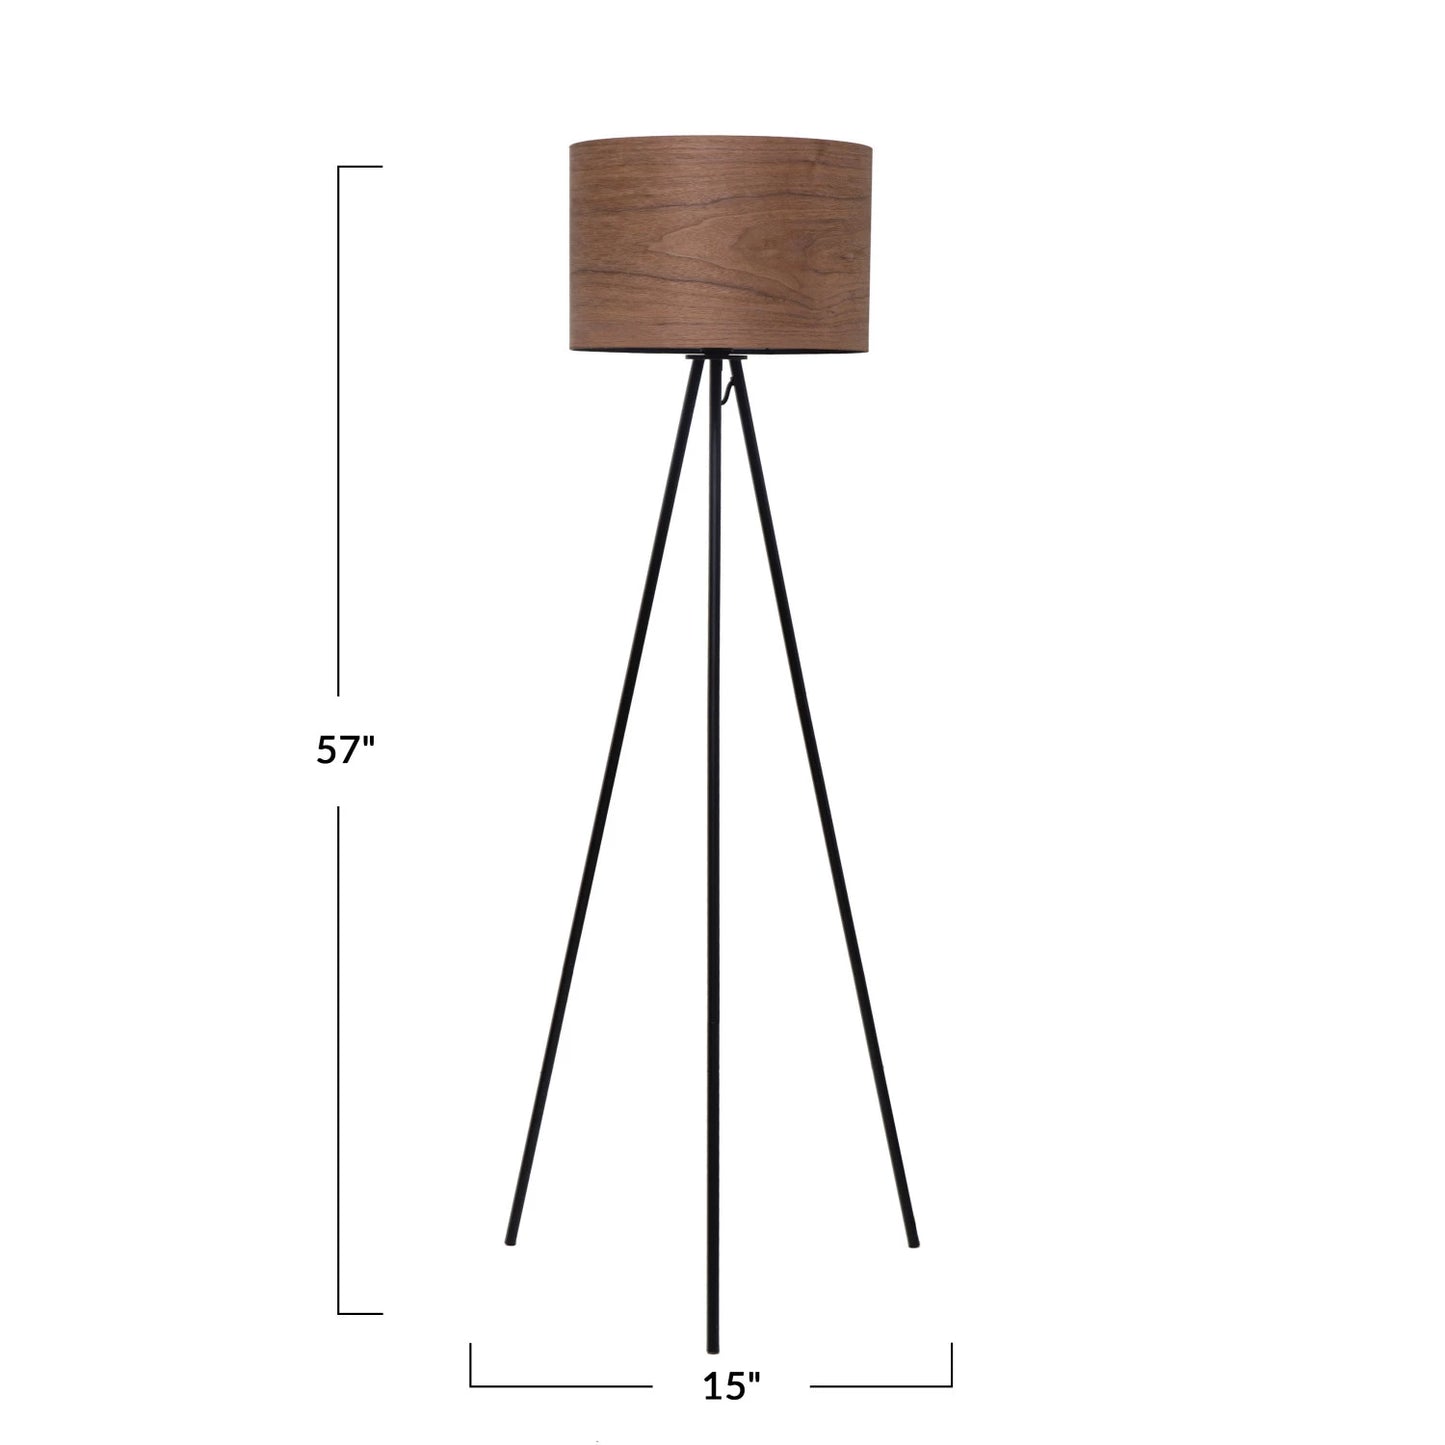 Metal Tripod Floor Lamp w/ Walnut Wood Shade, Black